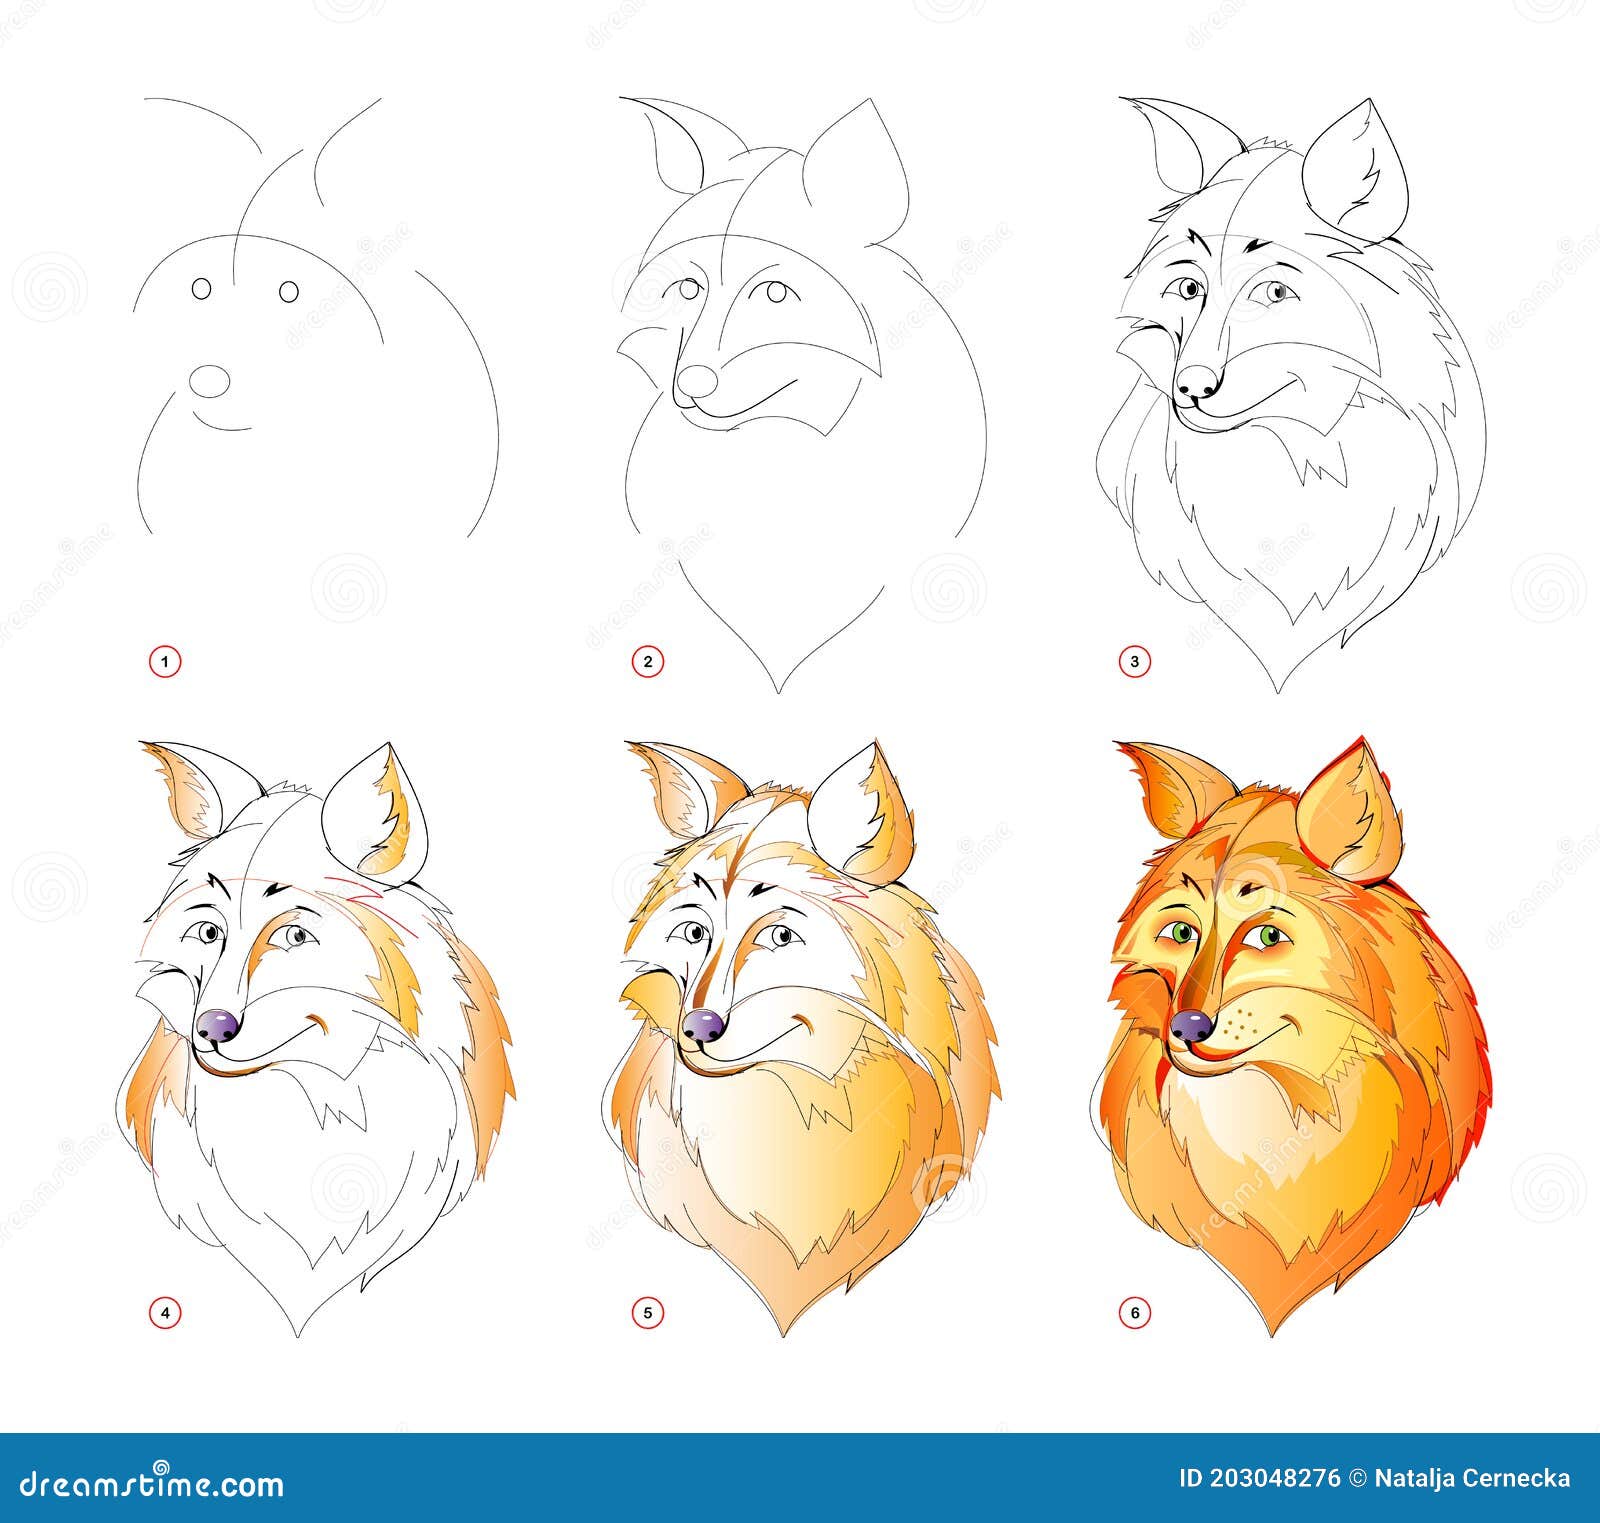 como desenhar uma raposa  Raposas desenho, Coisas para desenhar, Arte  raposa